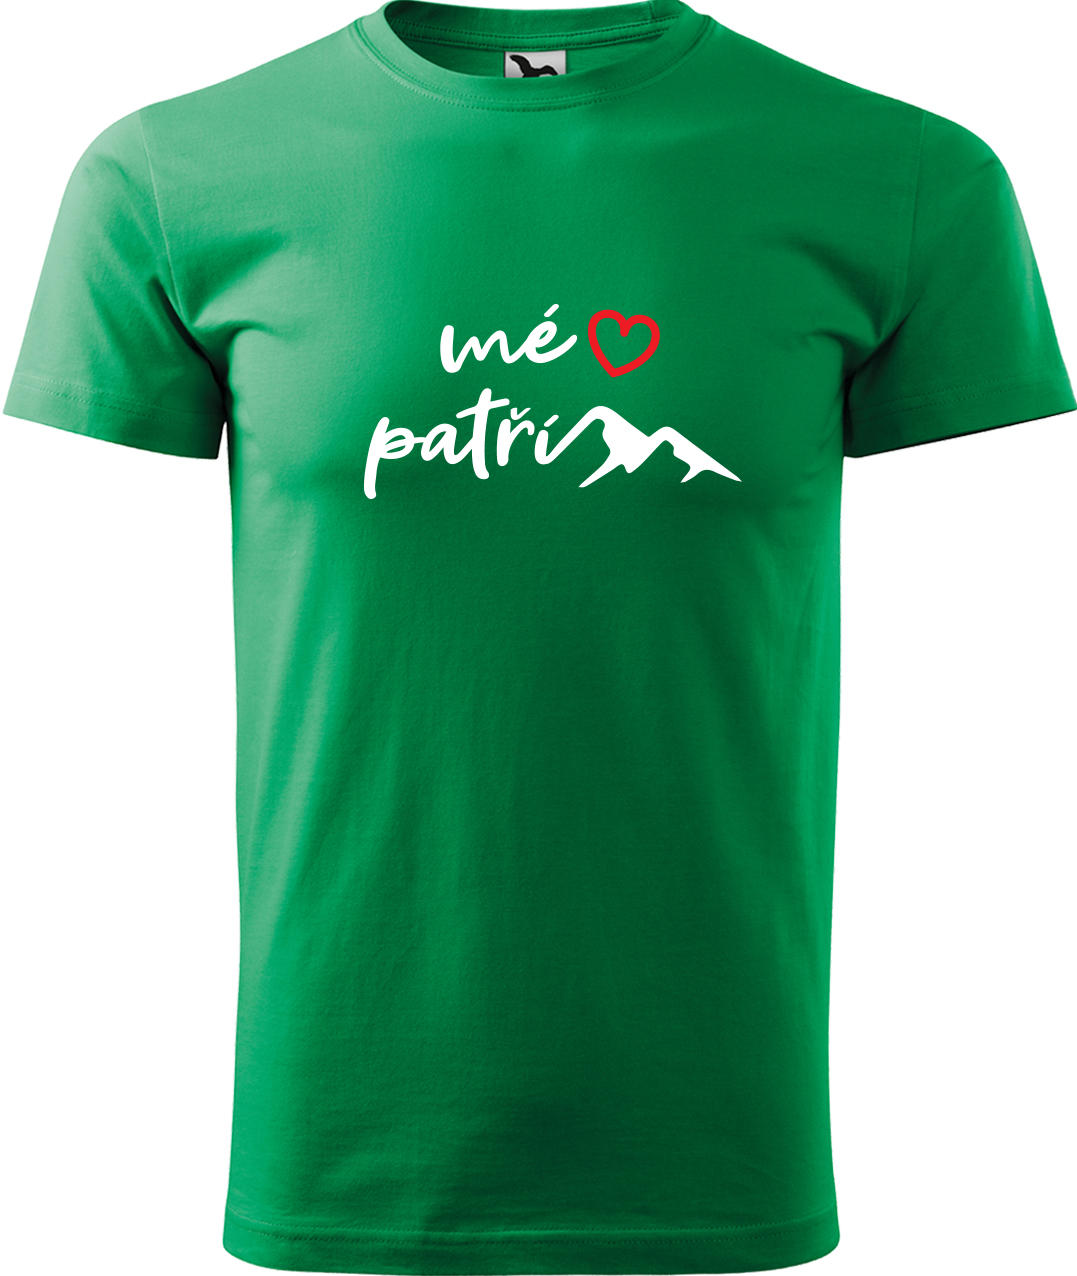 Pánské tričko na hory - Mé srdce patří horám Velikost: L, Barva: Středně zelená (16), Střih: pánský